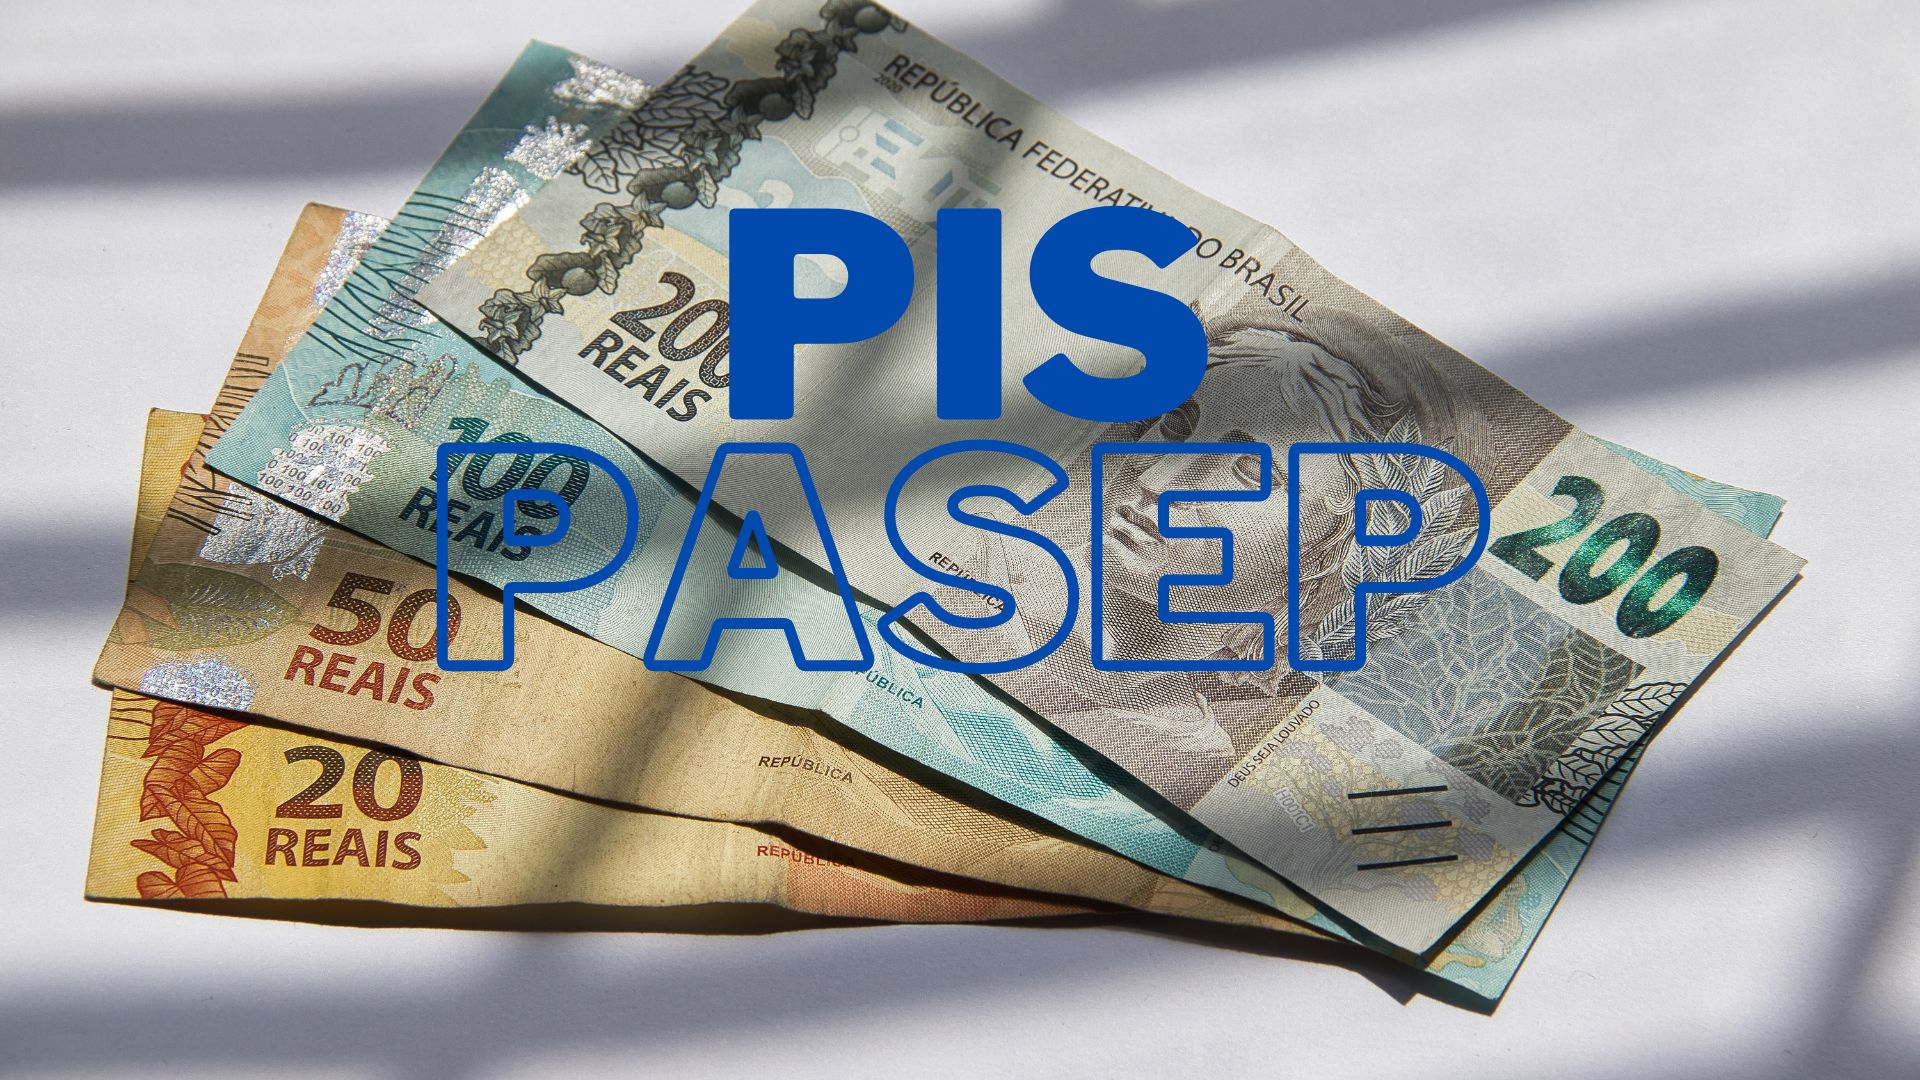 Valor do PIS/Pasep irá aumentar: confira nova quantia aplicada